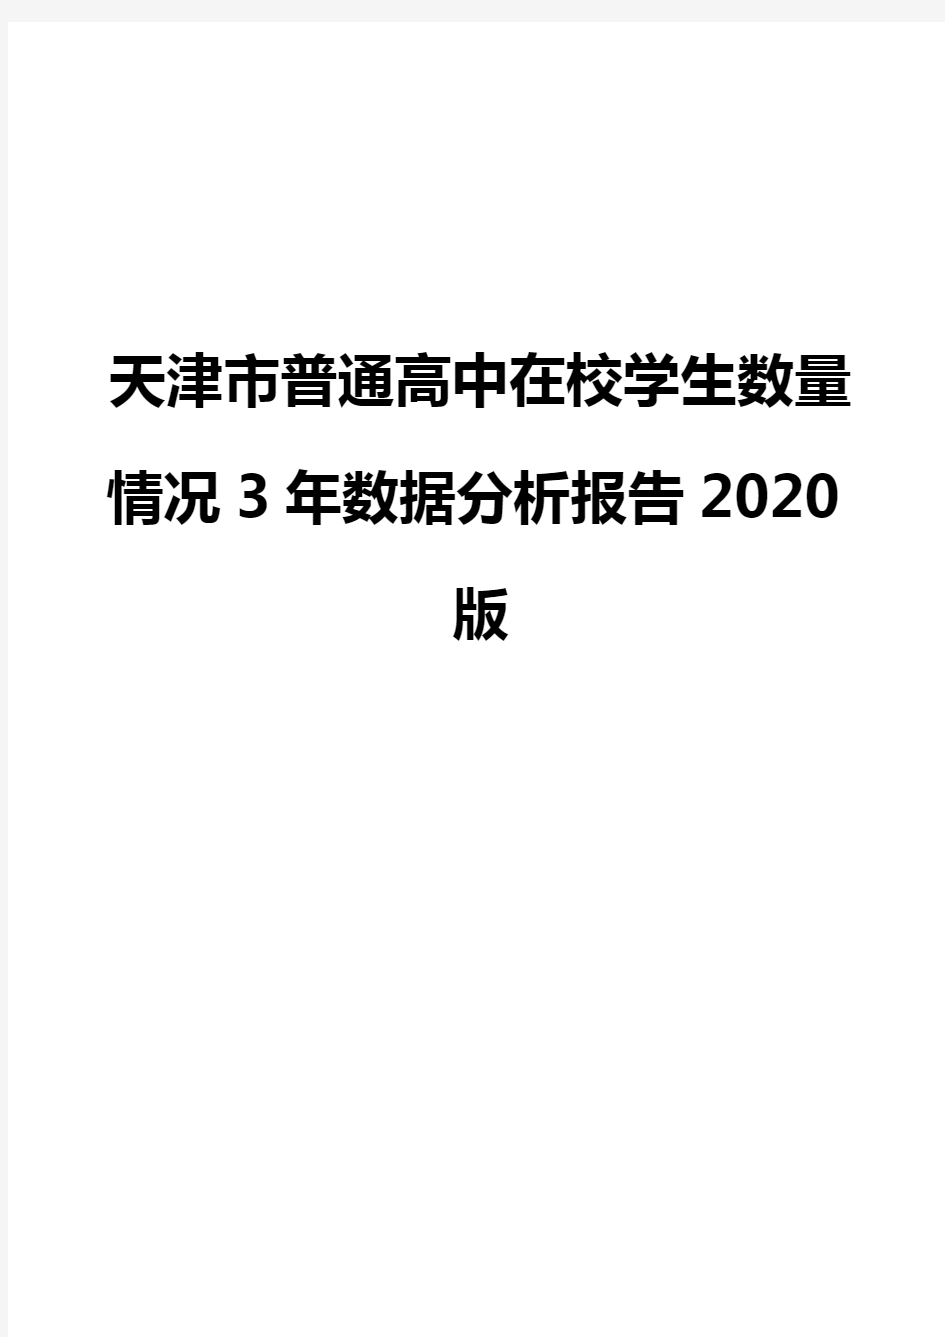 天津市普通高中在校学生数量情况3年数据分析报告2020版